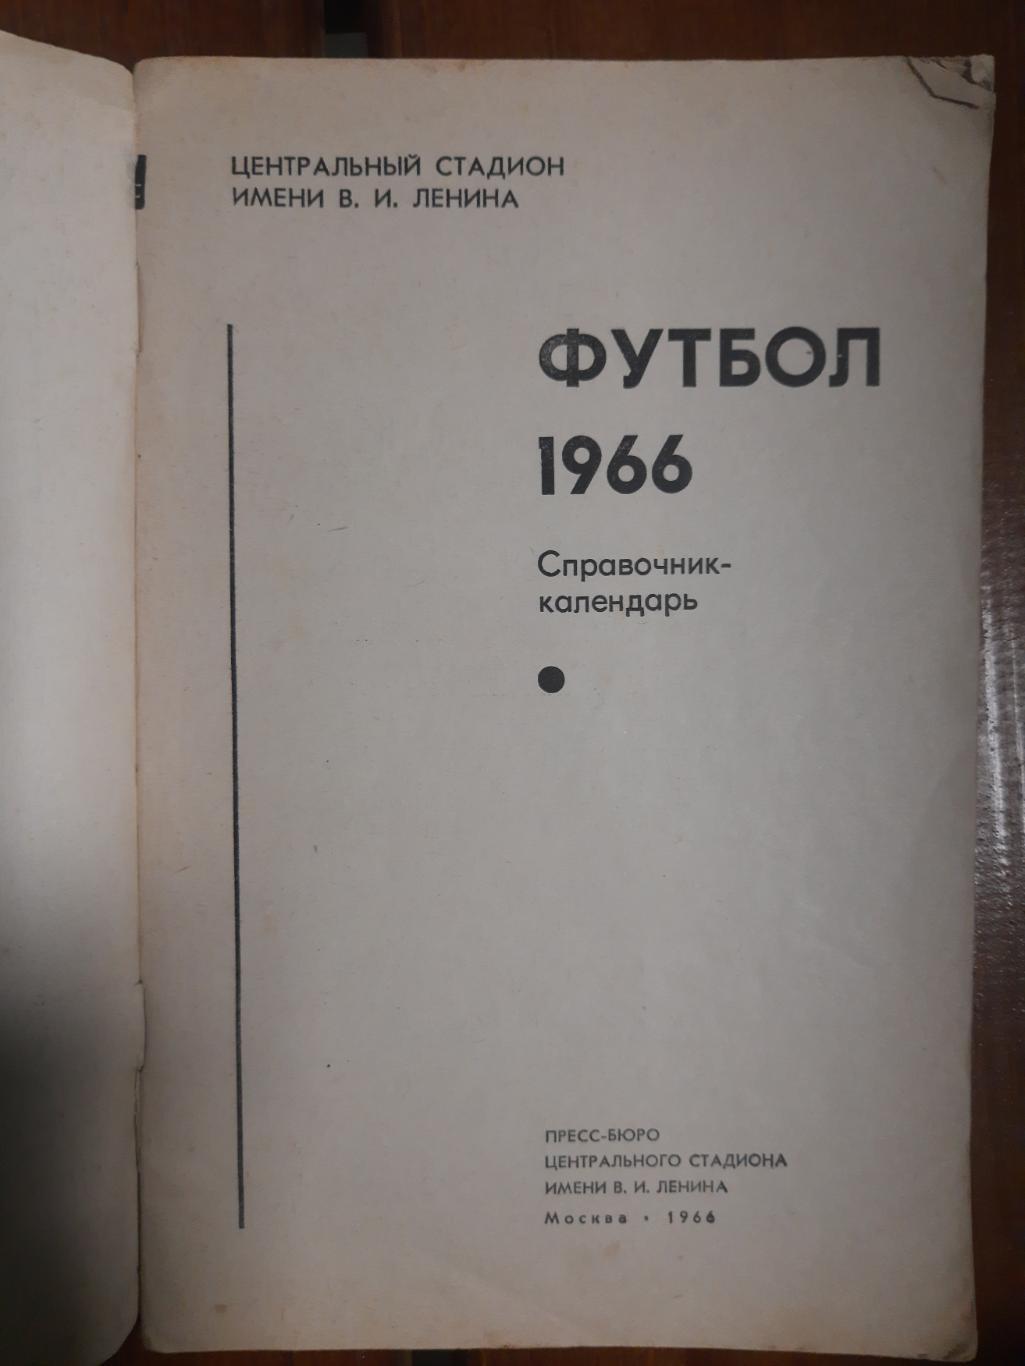 календарь-справочник,Футбол 1966 1